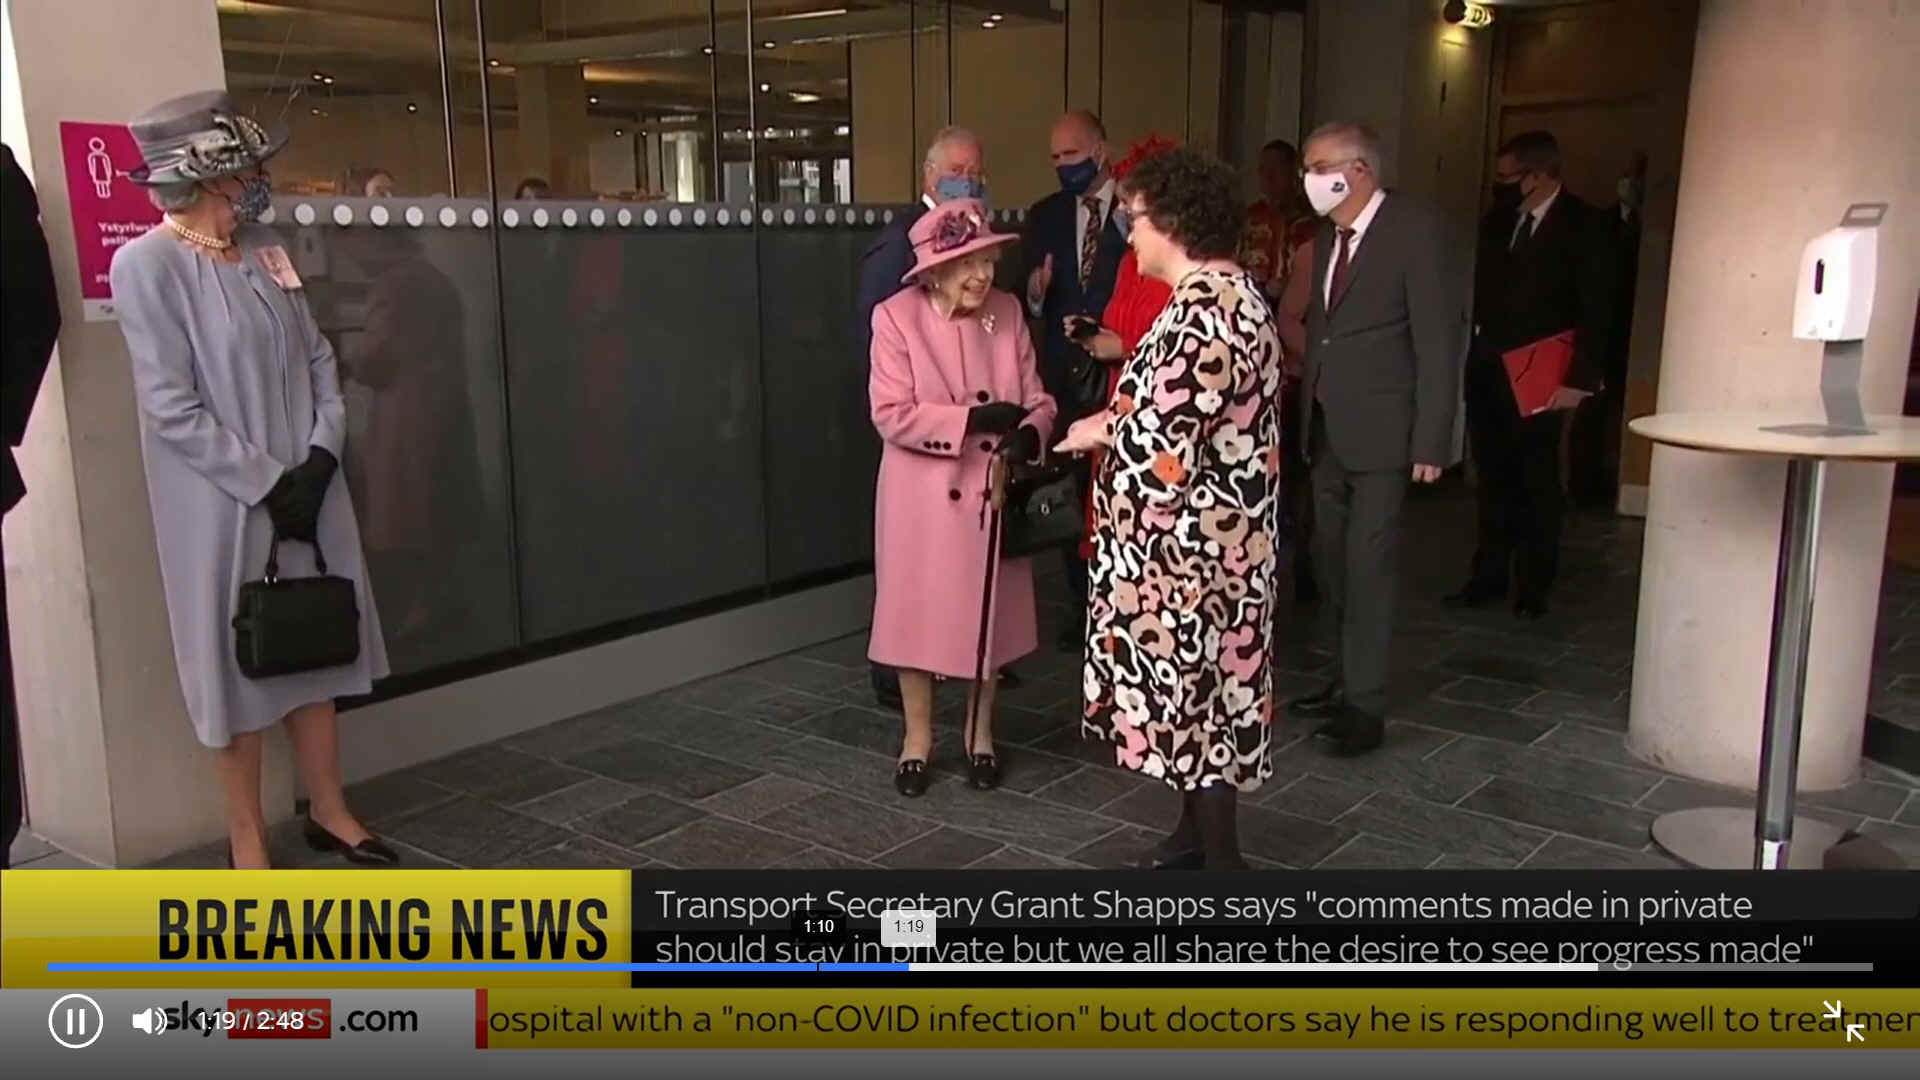 Queen Elizabeth opening ceremony in Scotland